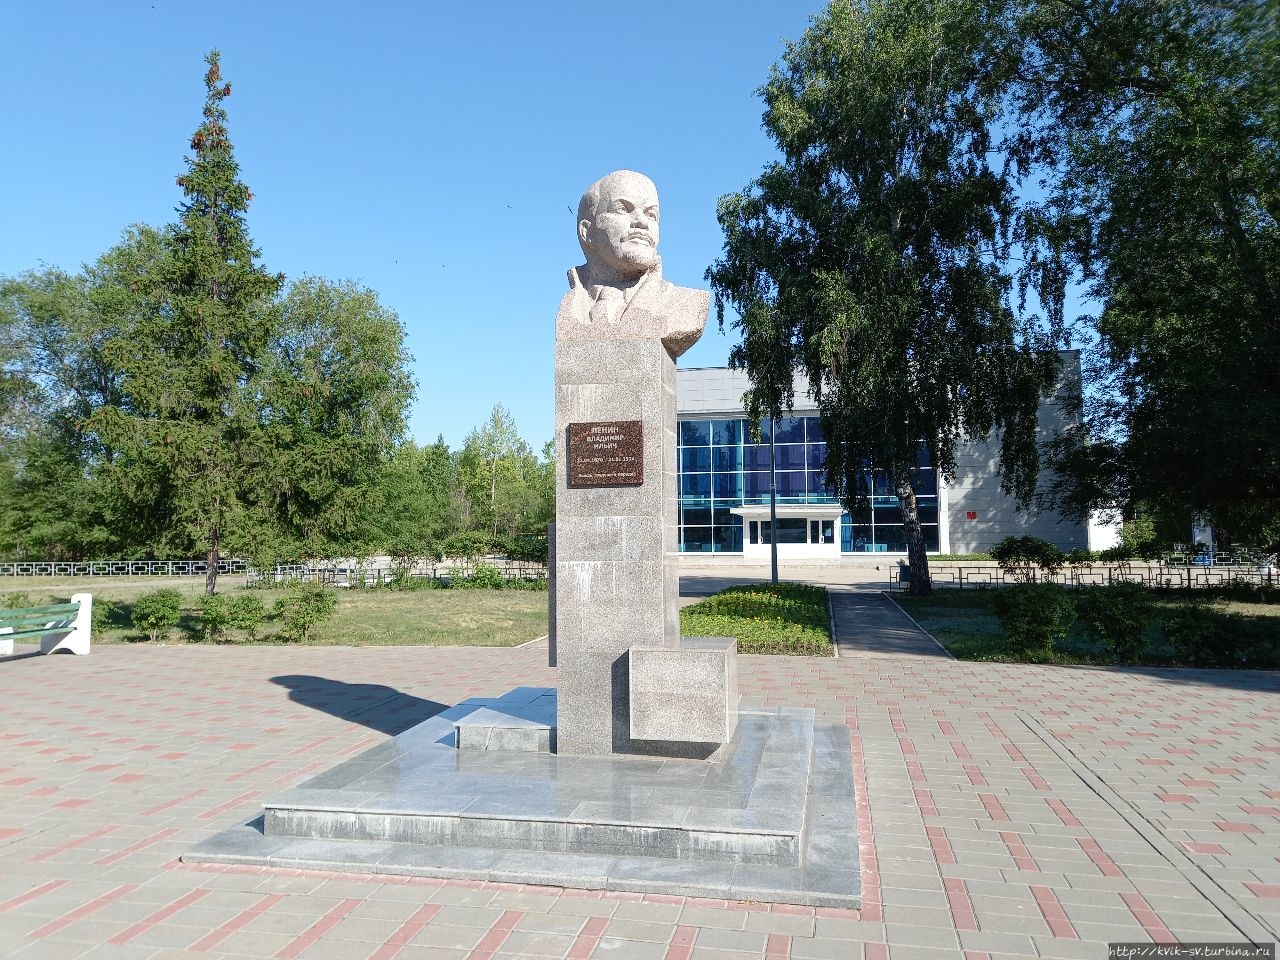 Очень все ухожено и чисто во дворе ДК и памятник В.И.Ленину в хорошем состоянии Самара, Россия